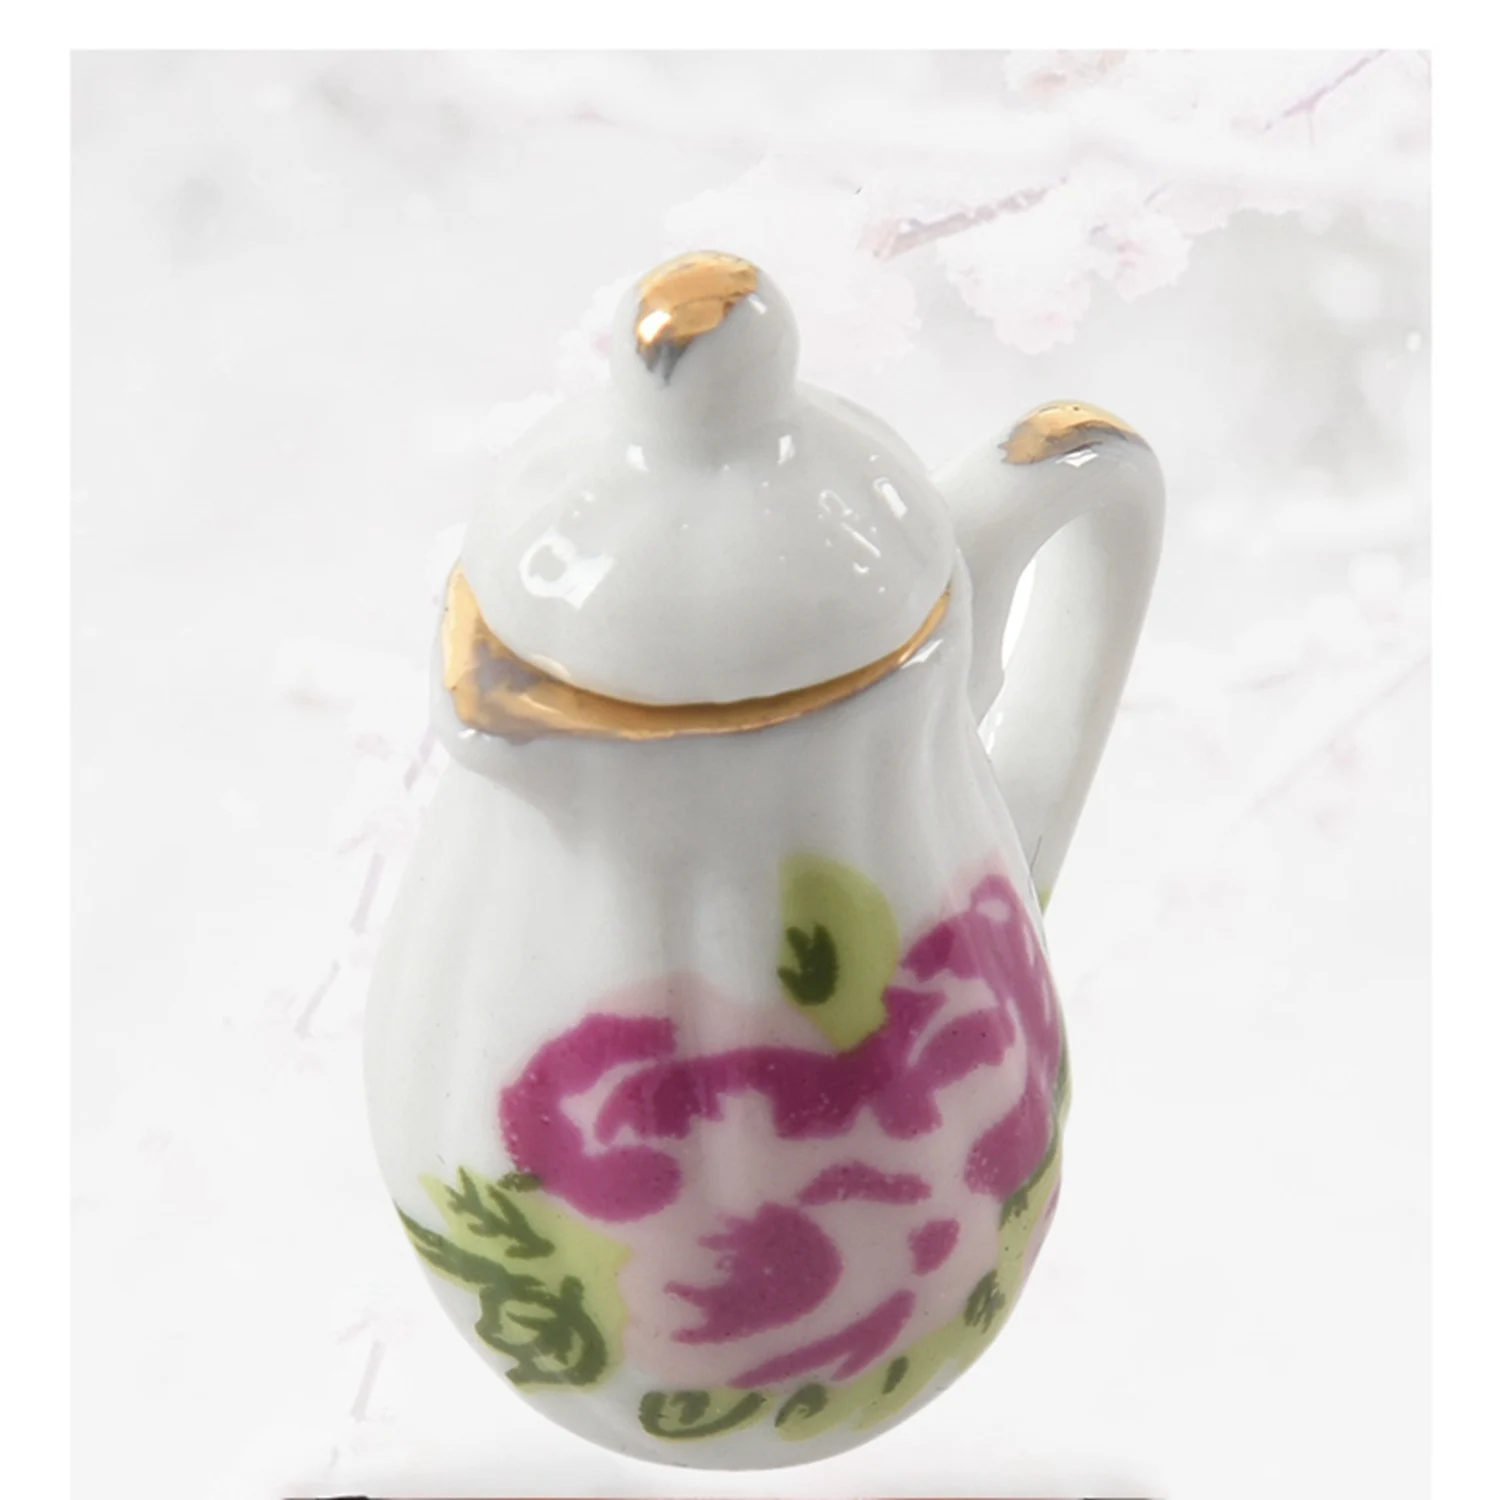 2 комплекта миниатюрной посуды, фарфоровый чайный сервиз - красочный цветочный принт и китайский Изображение 2